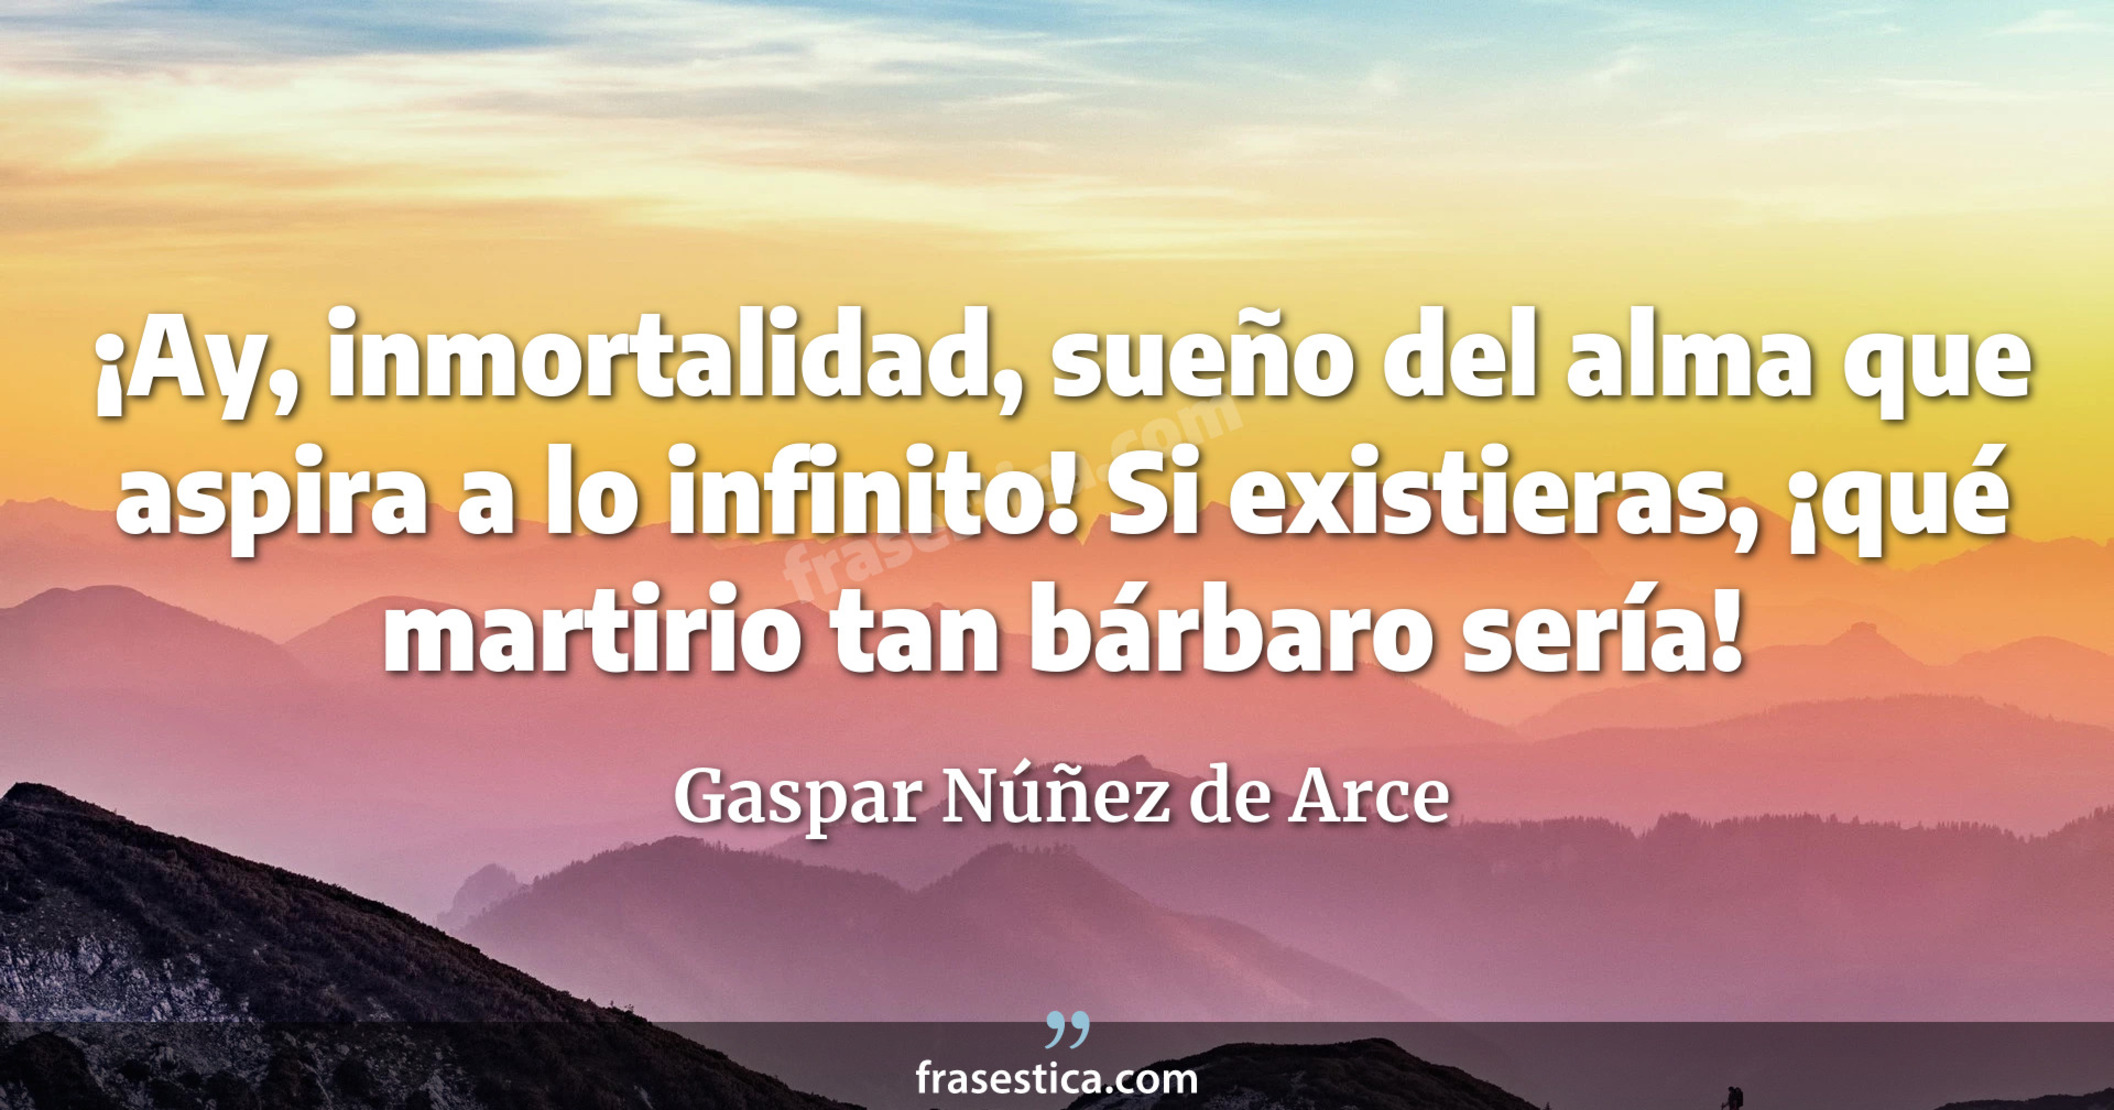 ¡Ay, inmortalidad, sueño del alma que aspira a lo infinito! Si existieras, ¡qué martirio tan bárbaro sería! - Gaspar Núñez de Arce